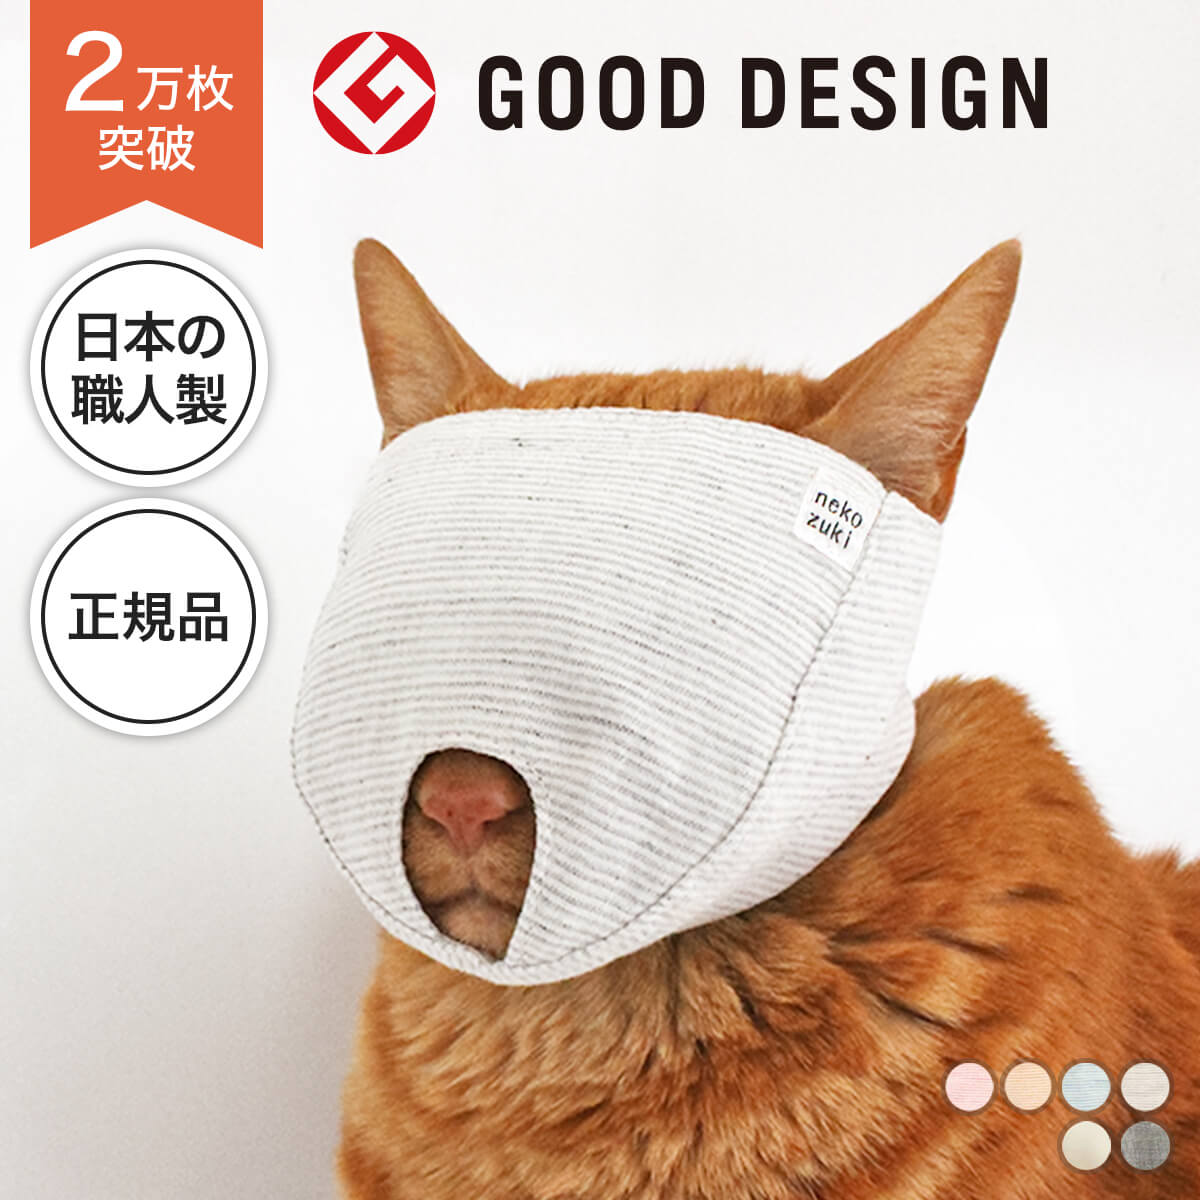 猫 爪切り 目隠し マスク 爪切り補助具 もふもふマスク 猫の爪切りグッズ 日本製 爪切り対策 